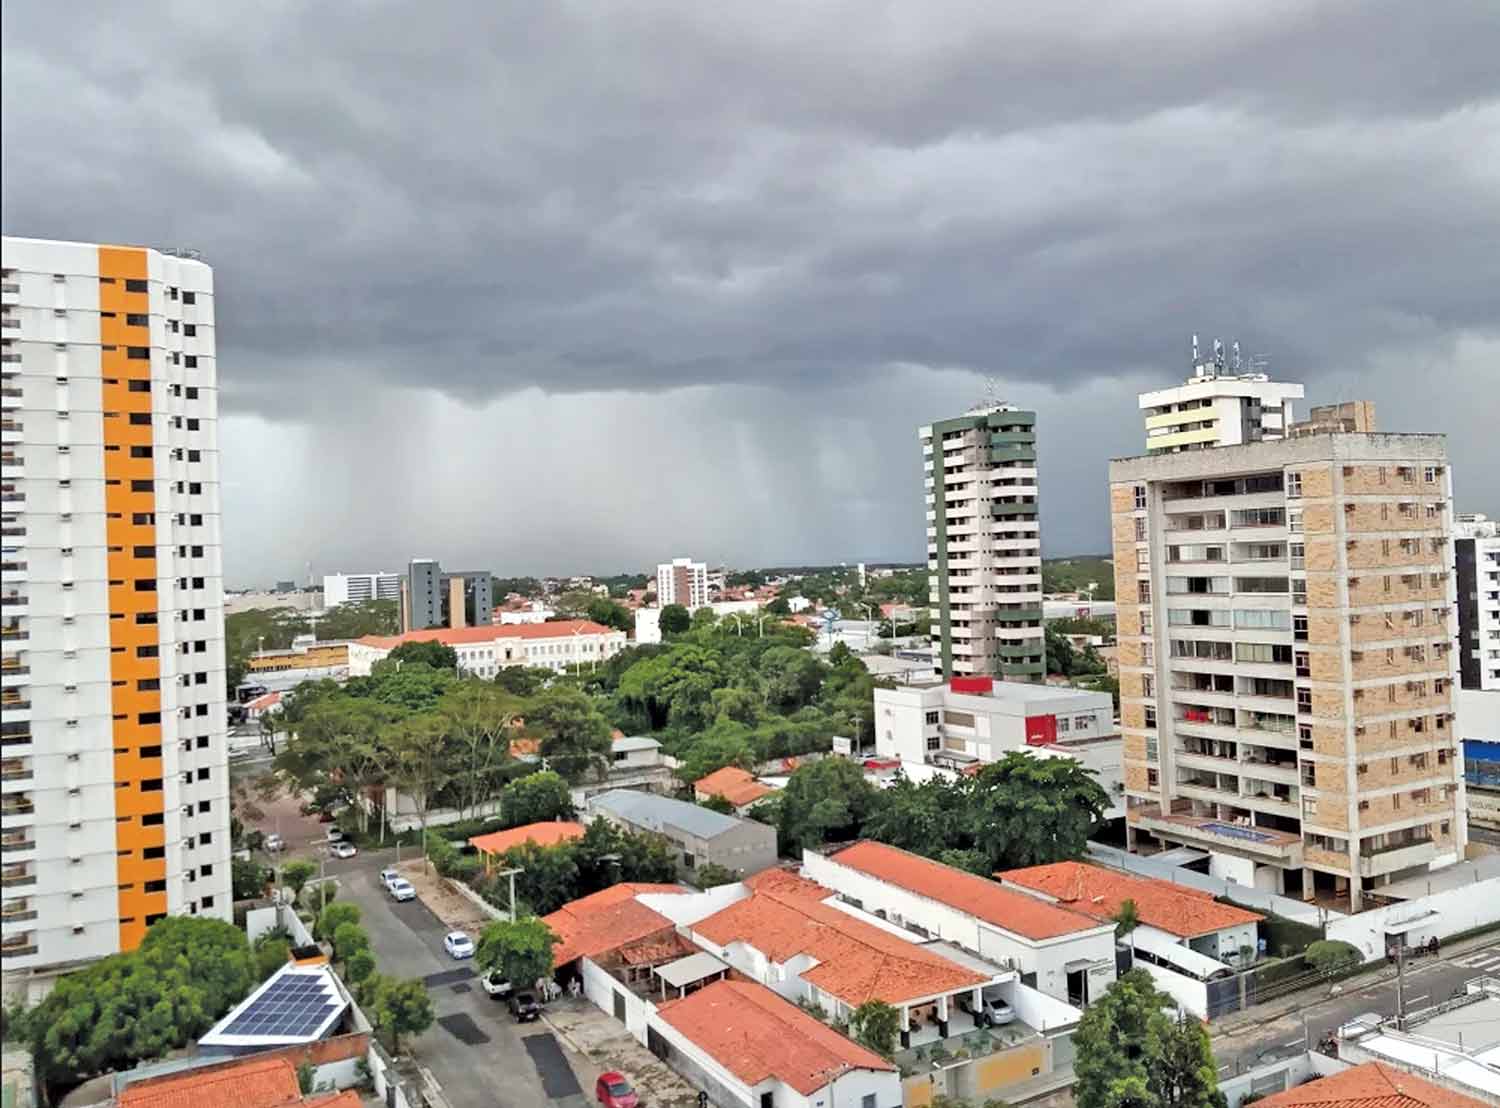 Cidades ao Norte do Piauí devem registrar mais chuvas em março | FOTO: Vanderson de Paulo